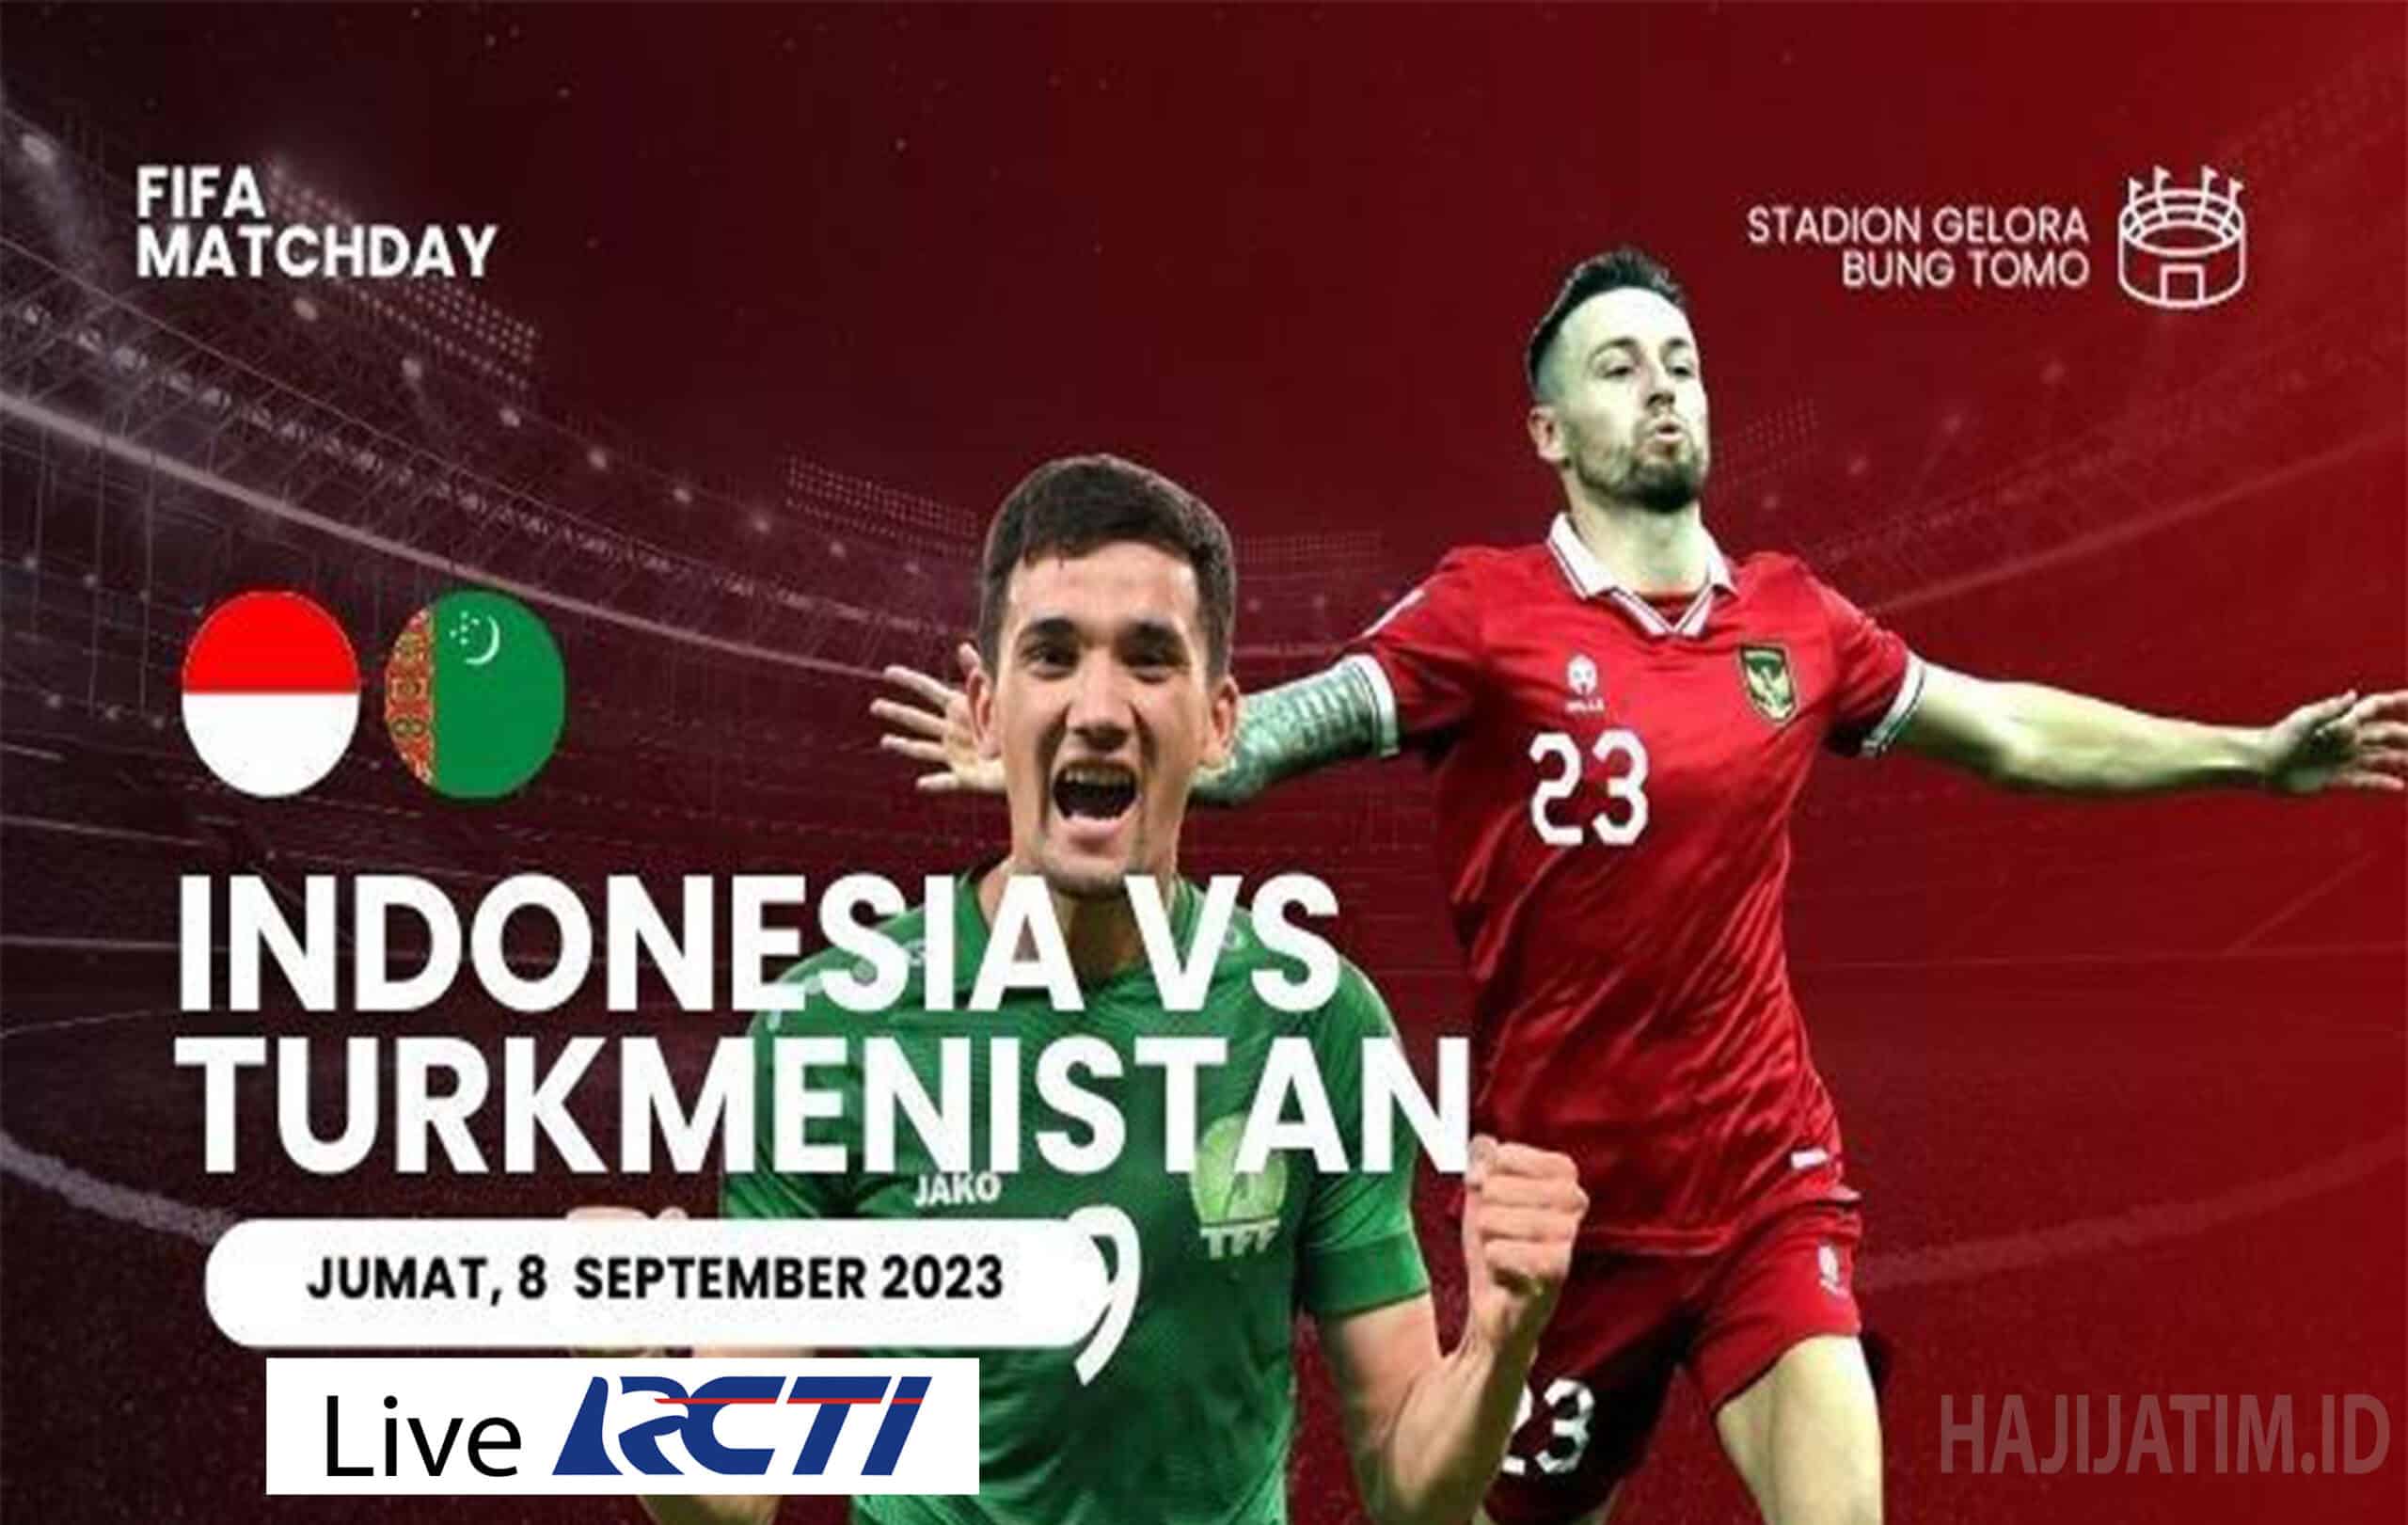 Prediksi Indonesia vs Turkmenistan di FIFA Matchday